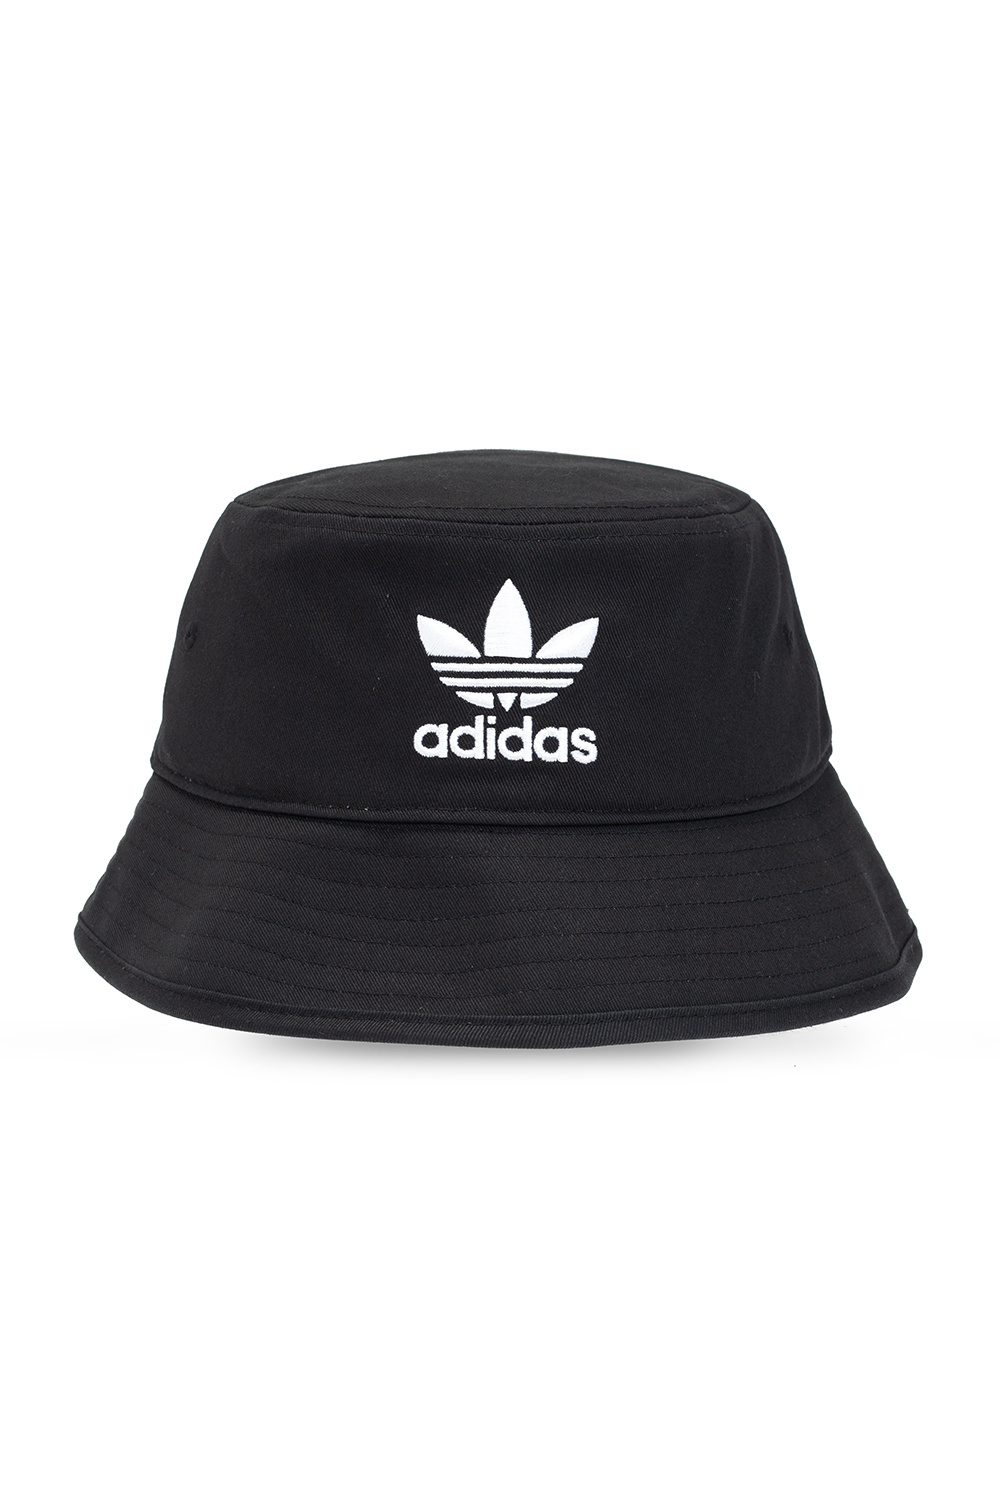 adidas torsion 2015 colorful pants - Bucket hat with logo Originals - IetpShops Croatia